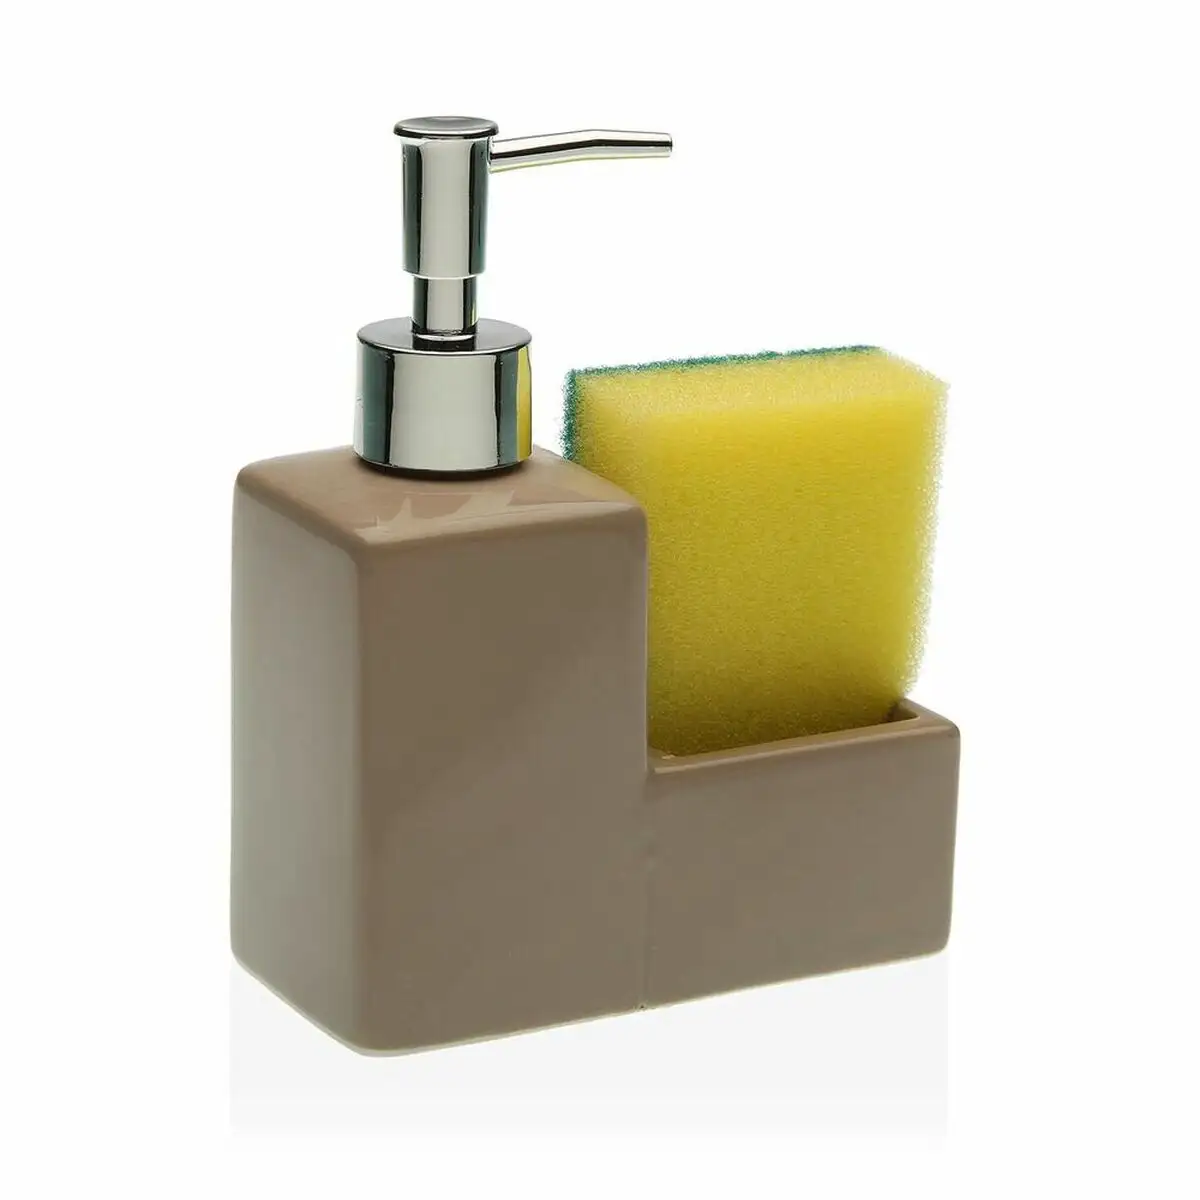 Distributeur de savon versa beige tampon a recurer ceramique 6 x 16 5 x 13 cm 13 x 6 x 16 5 cm _8613. DIAYTAR SENEGAL - Où Choisir Devient une Expression de Soi. Découvrez notre boutique en ligne et trouvez des articles qui révèlent votre personnalité et votre style.